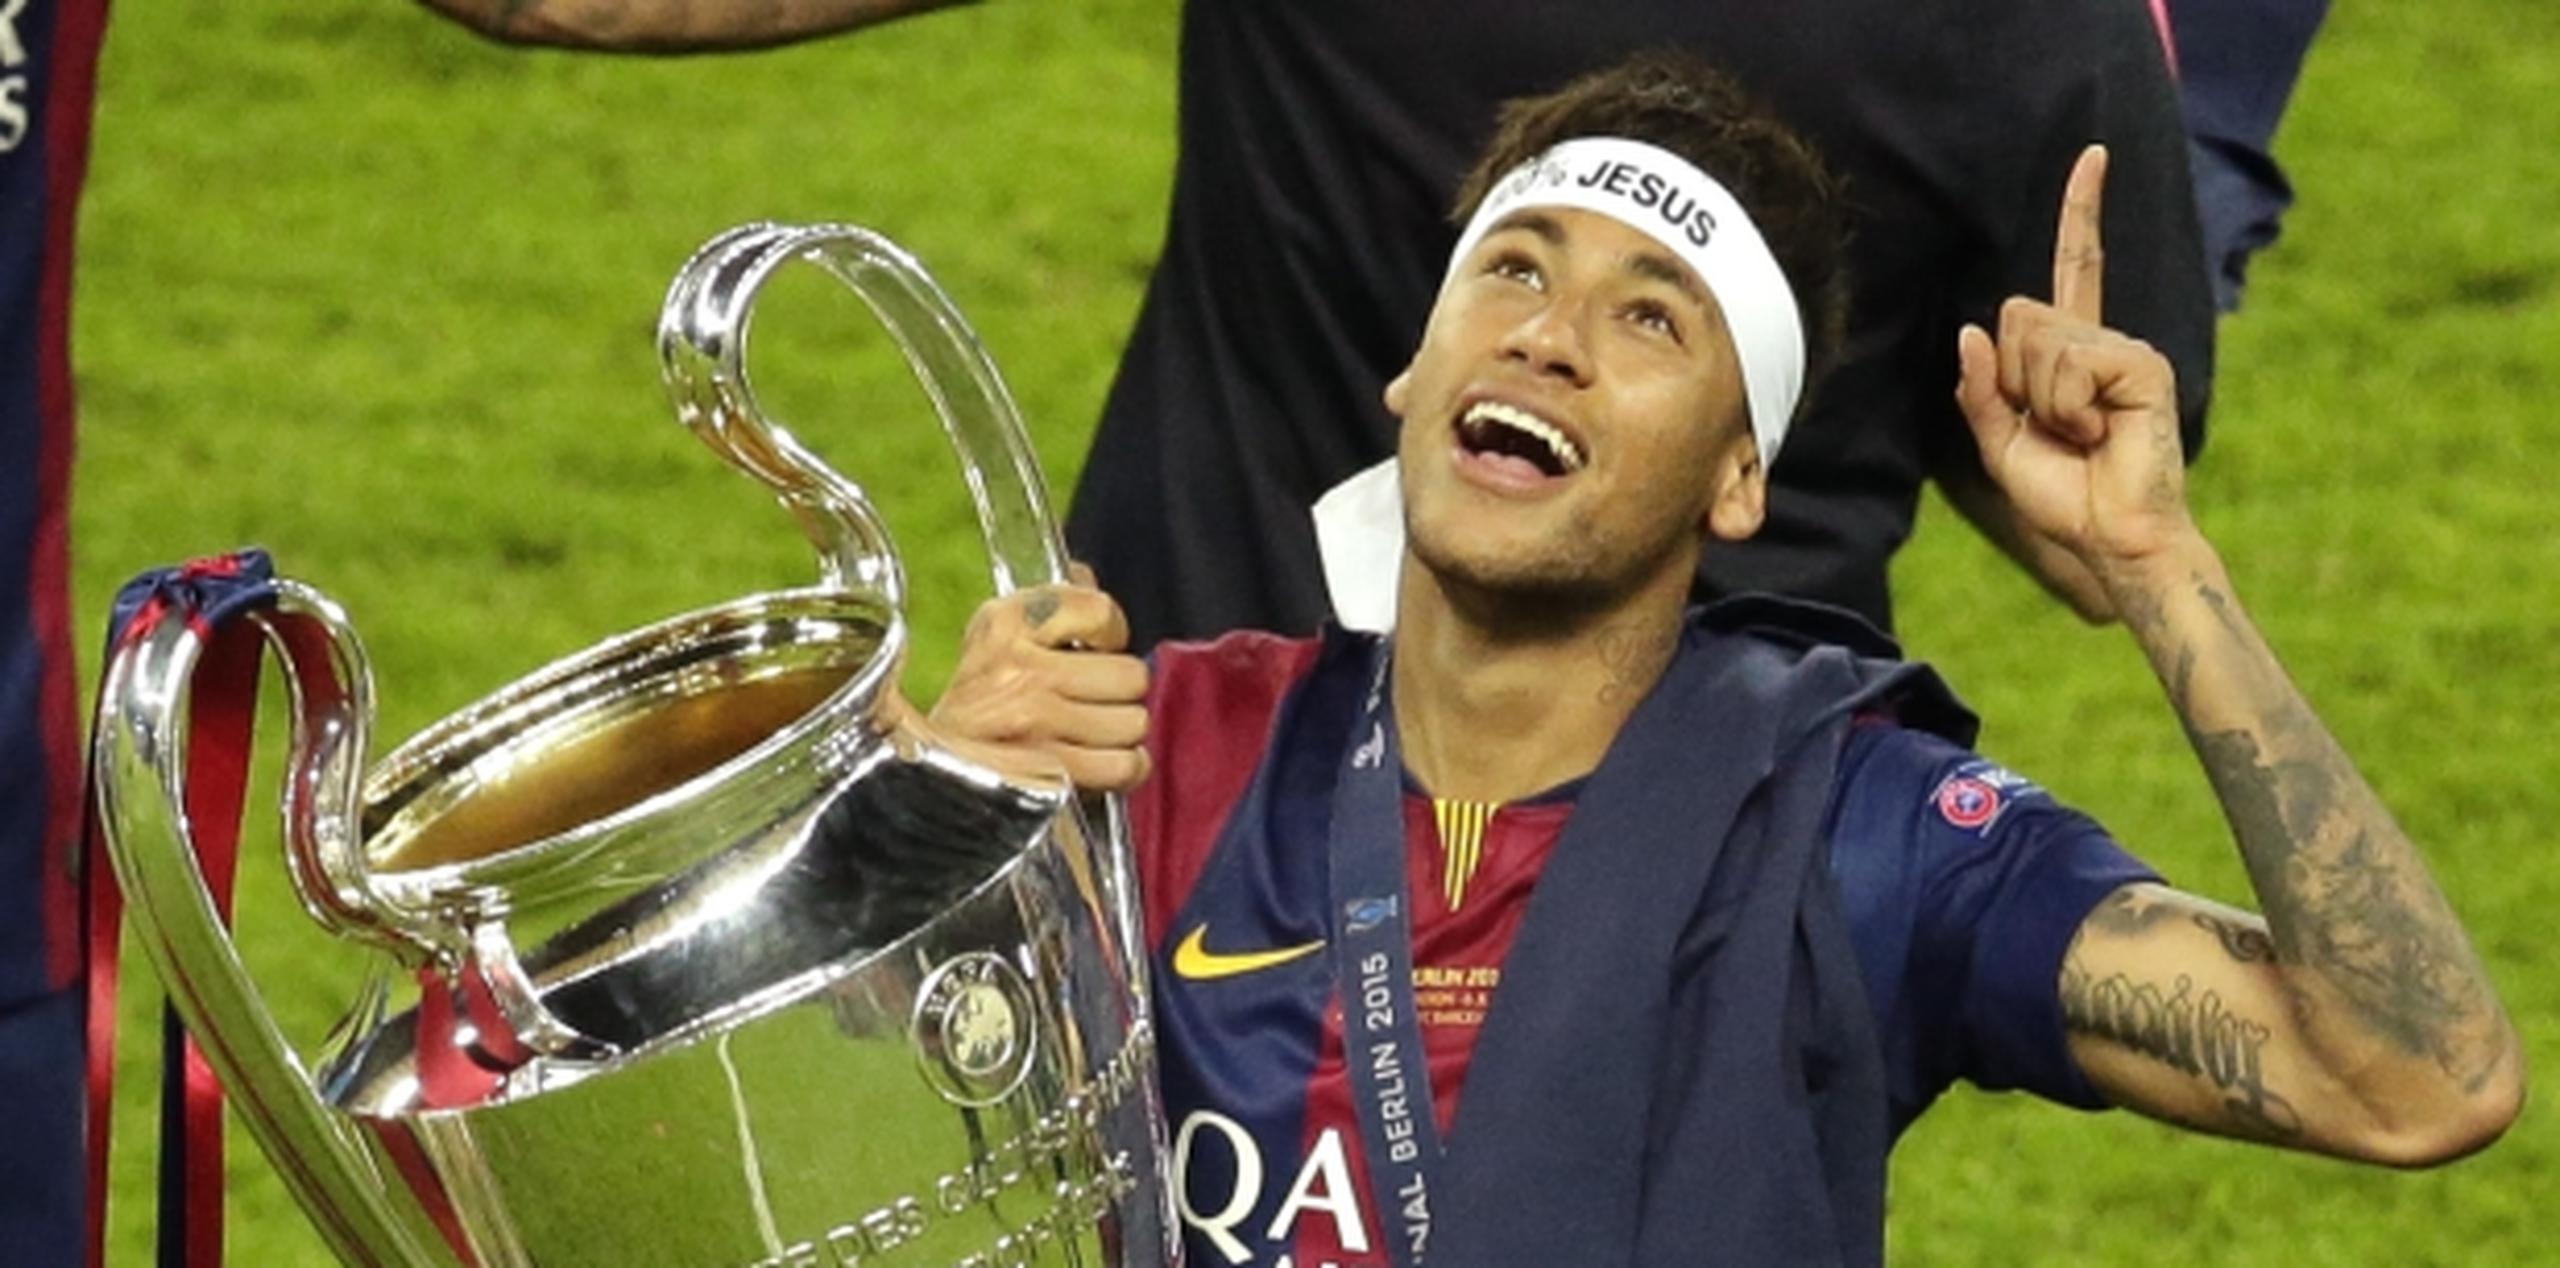 Neymar festejando con el trofeo de la Liga de Campeones el 6 de junio de 2015 tras la final contra Juventus en Berlín. (AP / Michael Sohn)